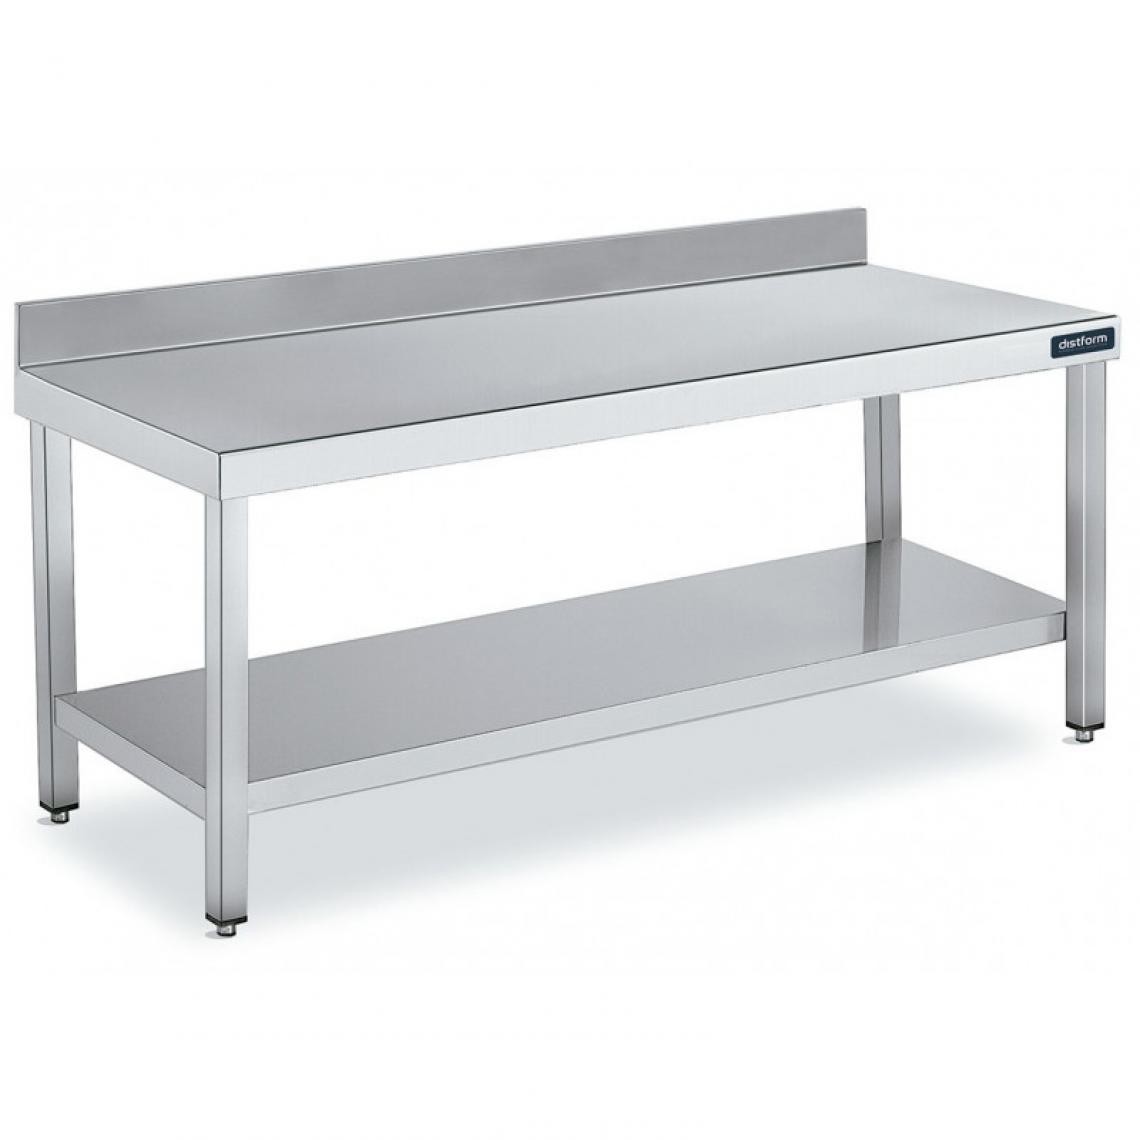 DISTFORM - Table Adossée en Inox avec 1 étagère Profondeur 700 mm - Distform - Acier inoxydable1700x700 - Tables à manger